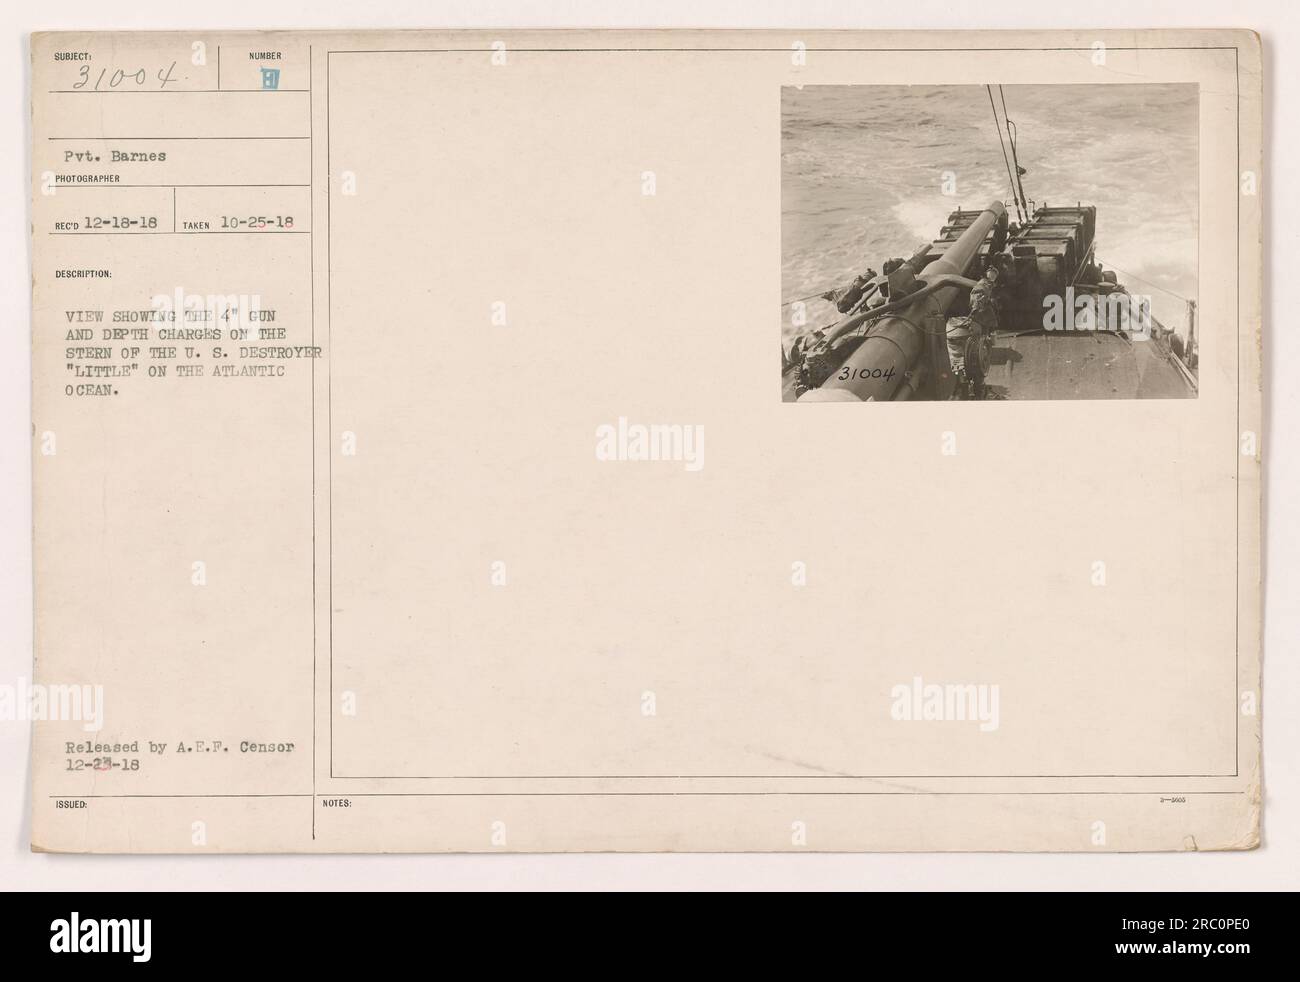 Questa fotografia, scattata il 25 ottobre 1918, mostra la poppa del cacciatorpediniere statunitense "Little" sull'Oceano Atlantico. Raffigura un cannone da 4' e cariche di profondità montate sulla nave. L'immagine è stata rilasciata da A.E.F. Censura il 23 dicembre 1918. Foto scattata da Pvt. Barnes del co 12-18-18. Foto Stock